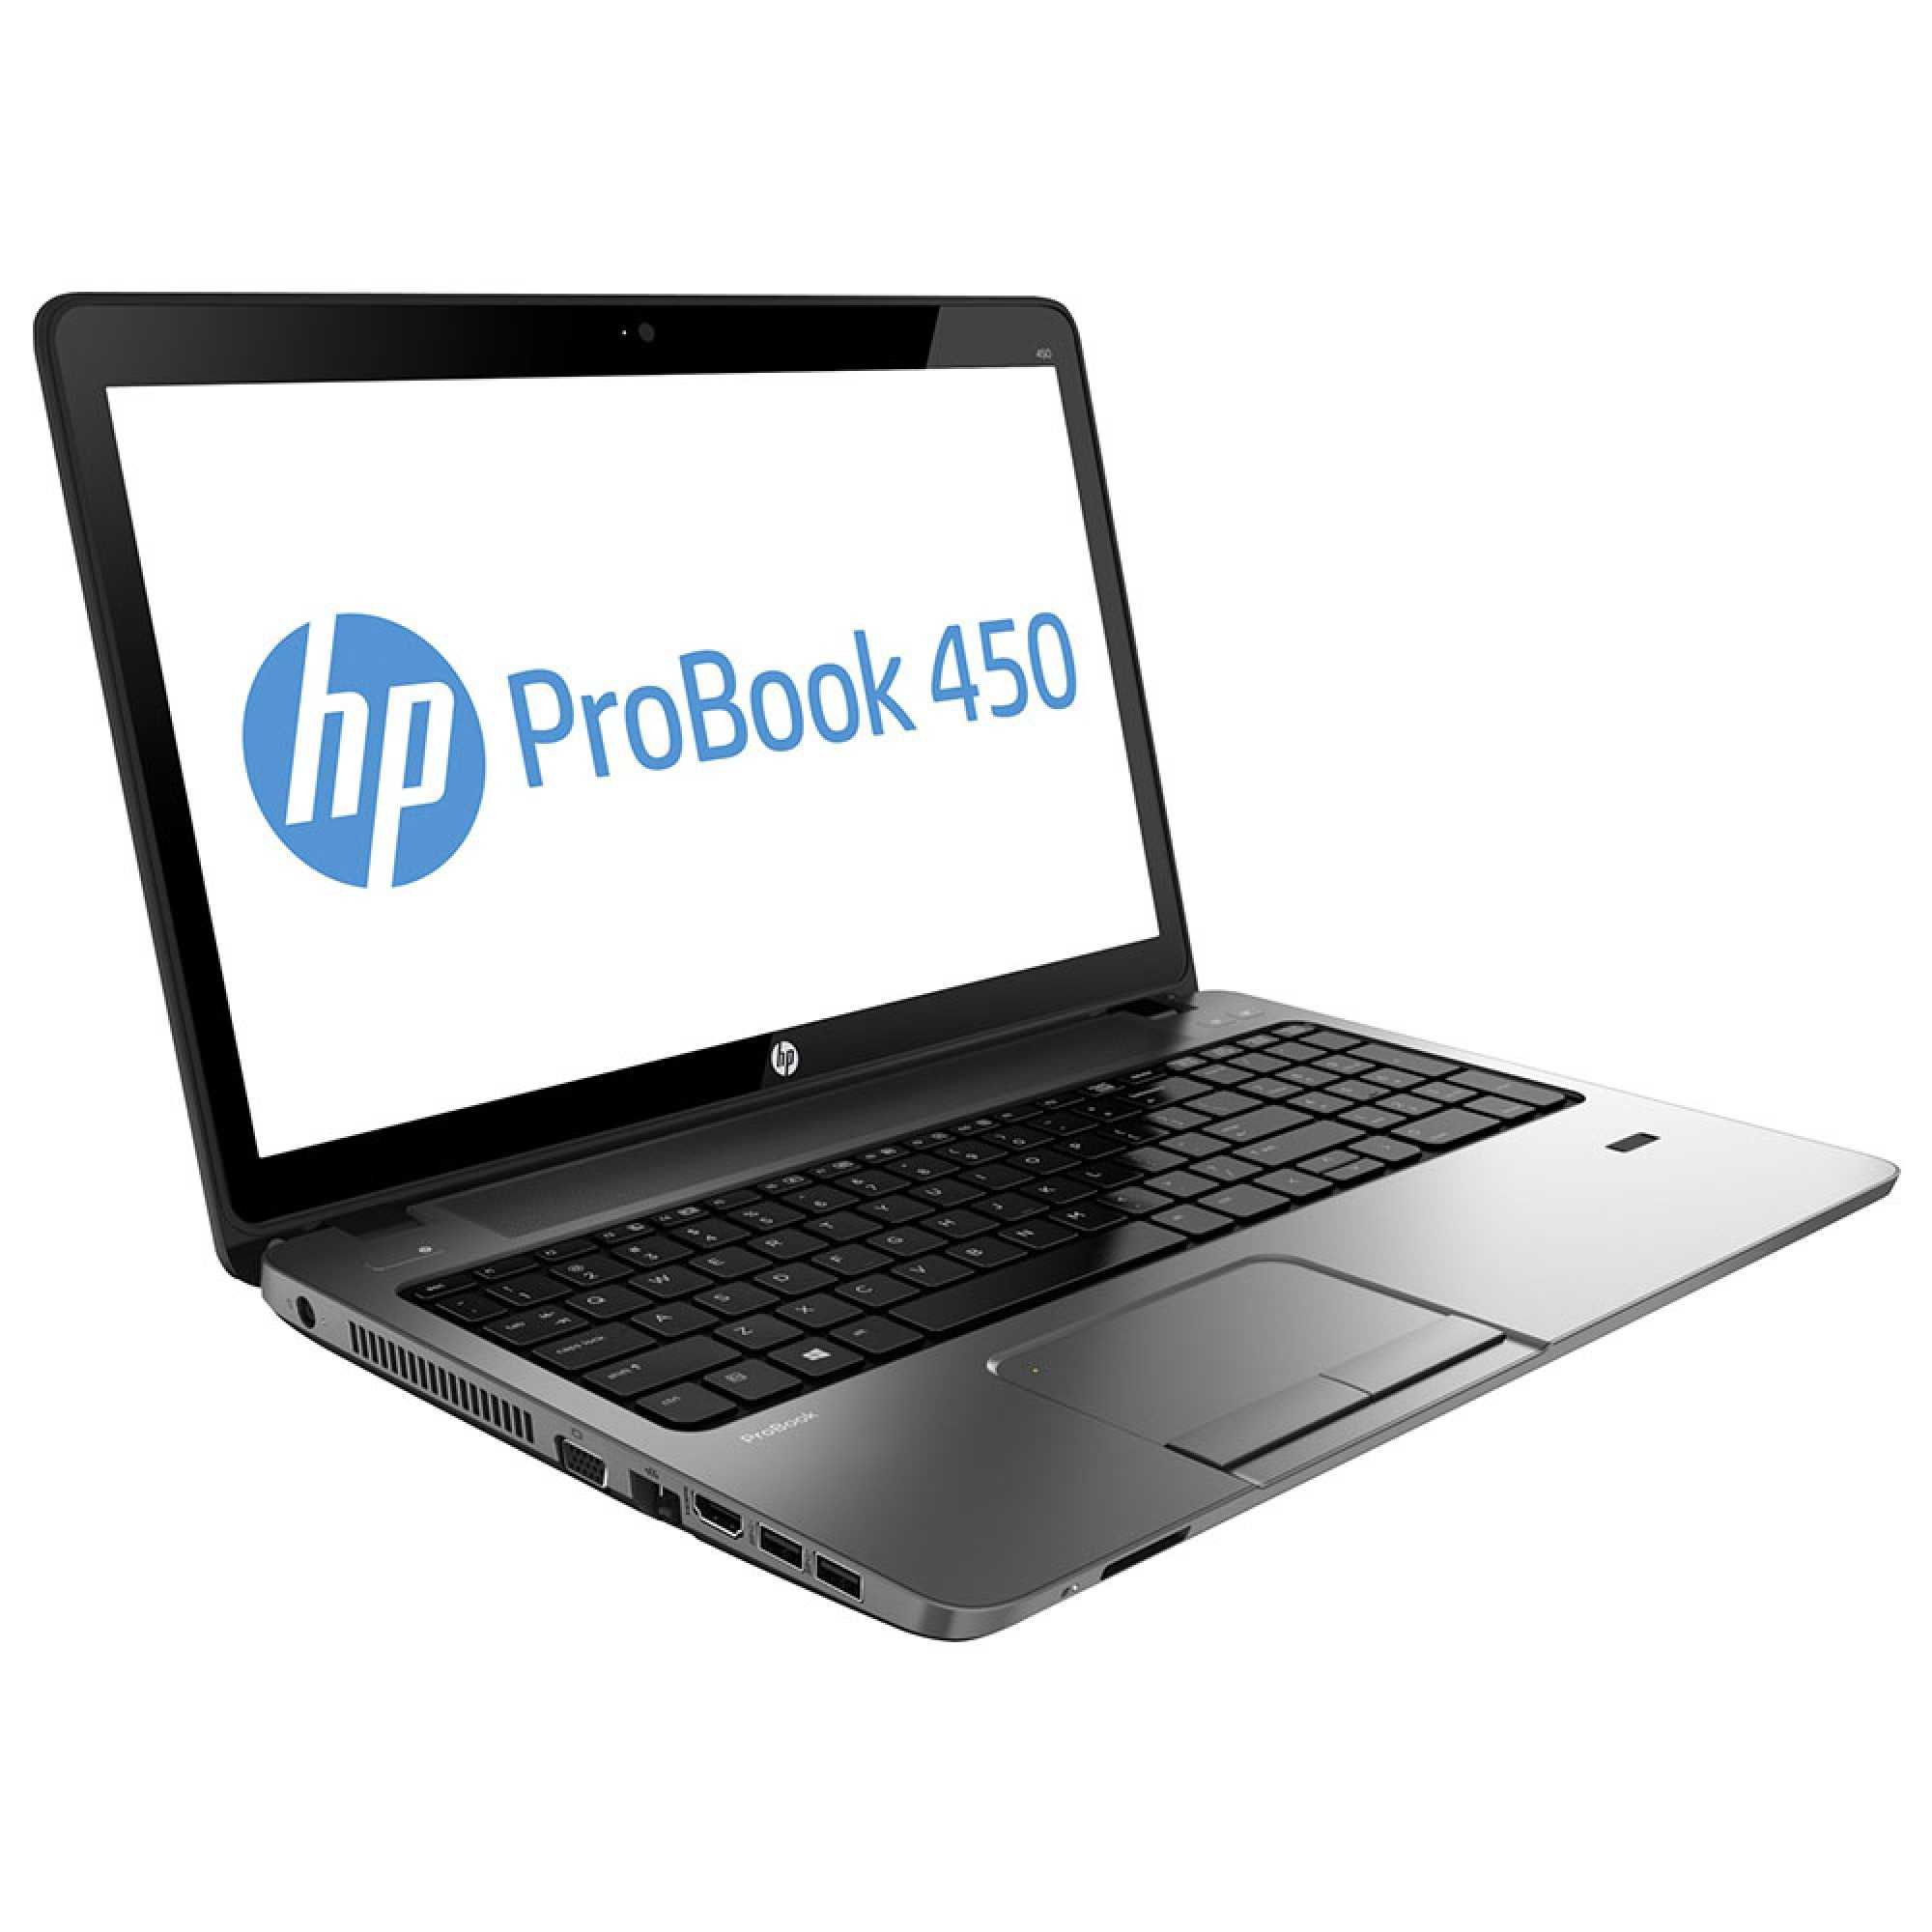 Ноутбук HP ProBook 450 G0 (H0V97EA) - подробные характеристики обзоры видео фото Цены в интернет-магазинах где можно купить ноутбук HP ProBook 450 G0 (H0V97EA)